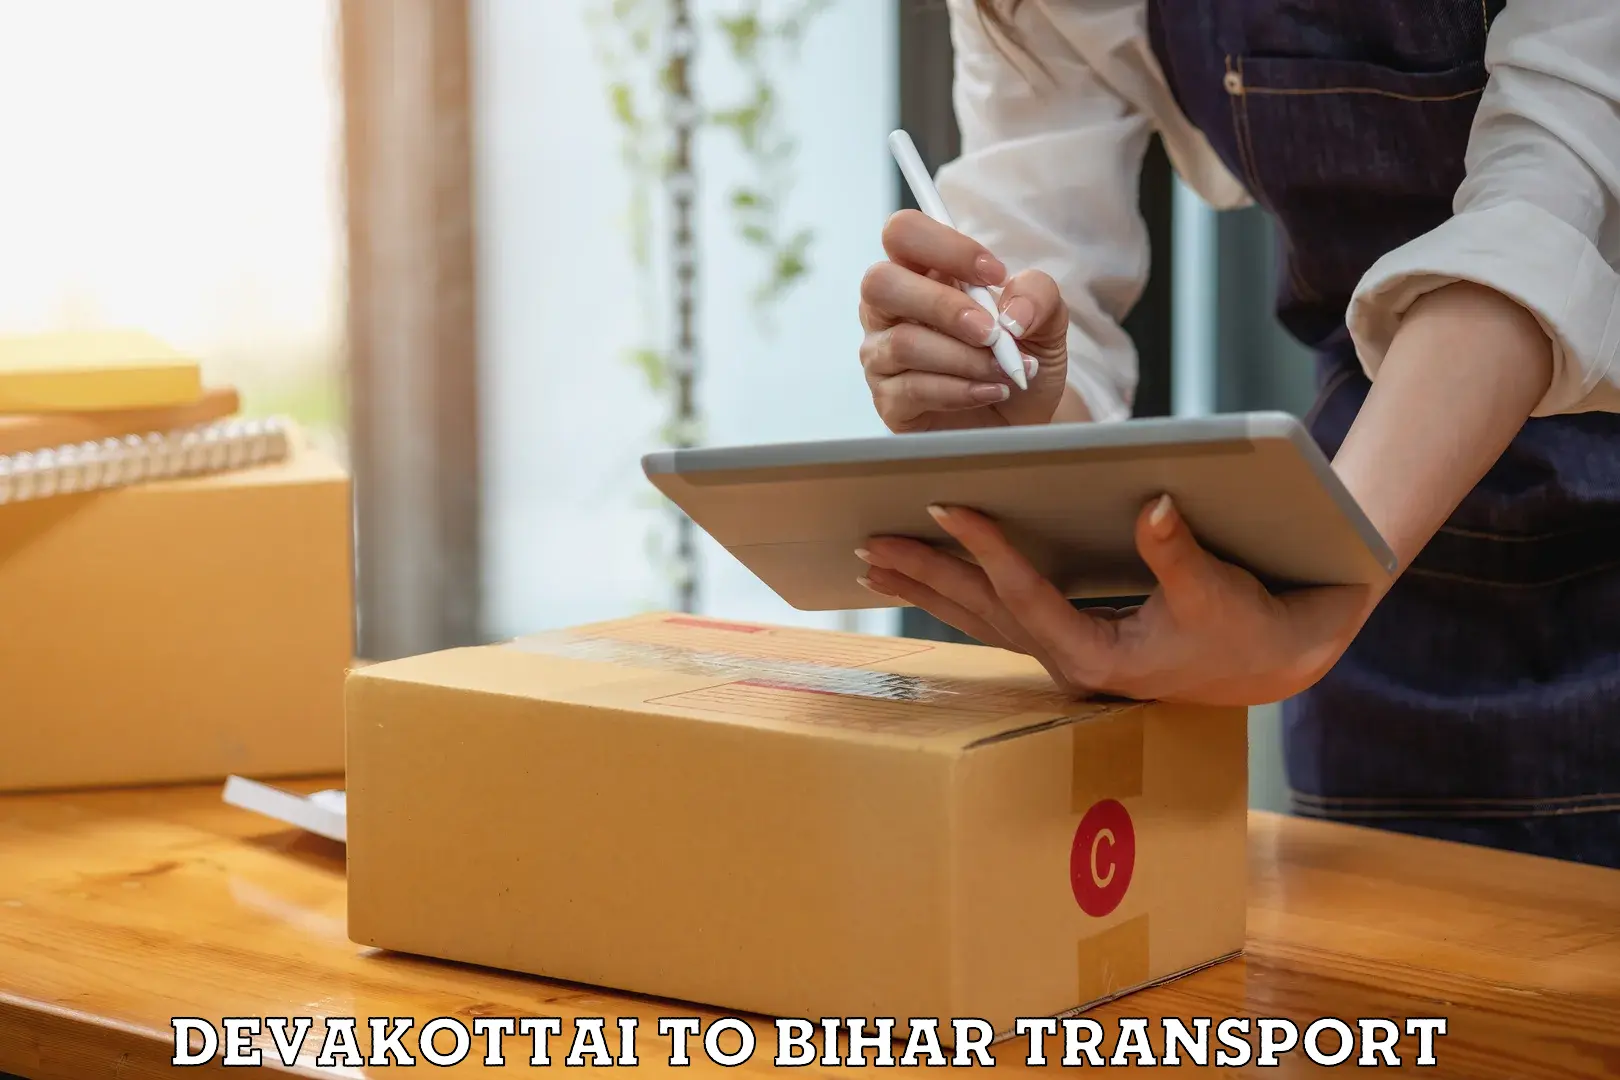 Pick up transport service Devakottai to Bhojpur